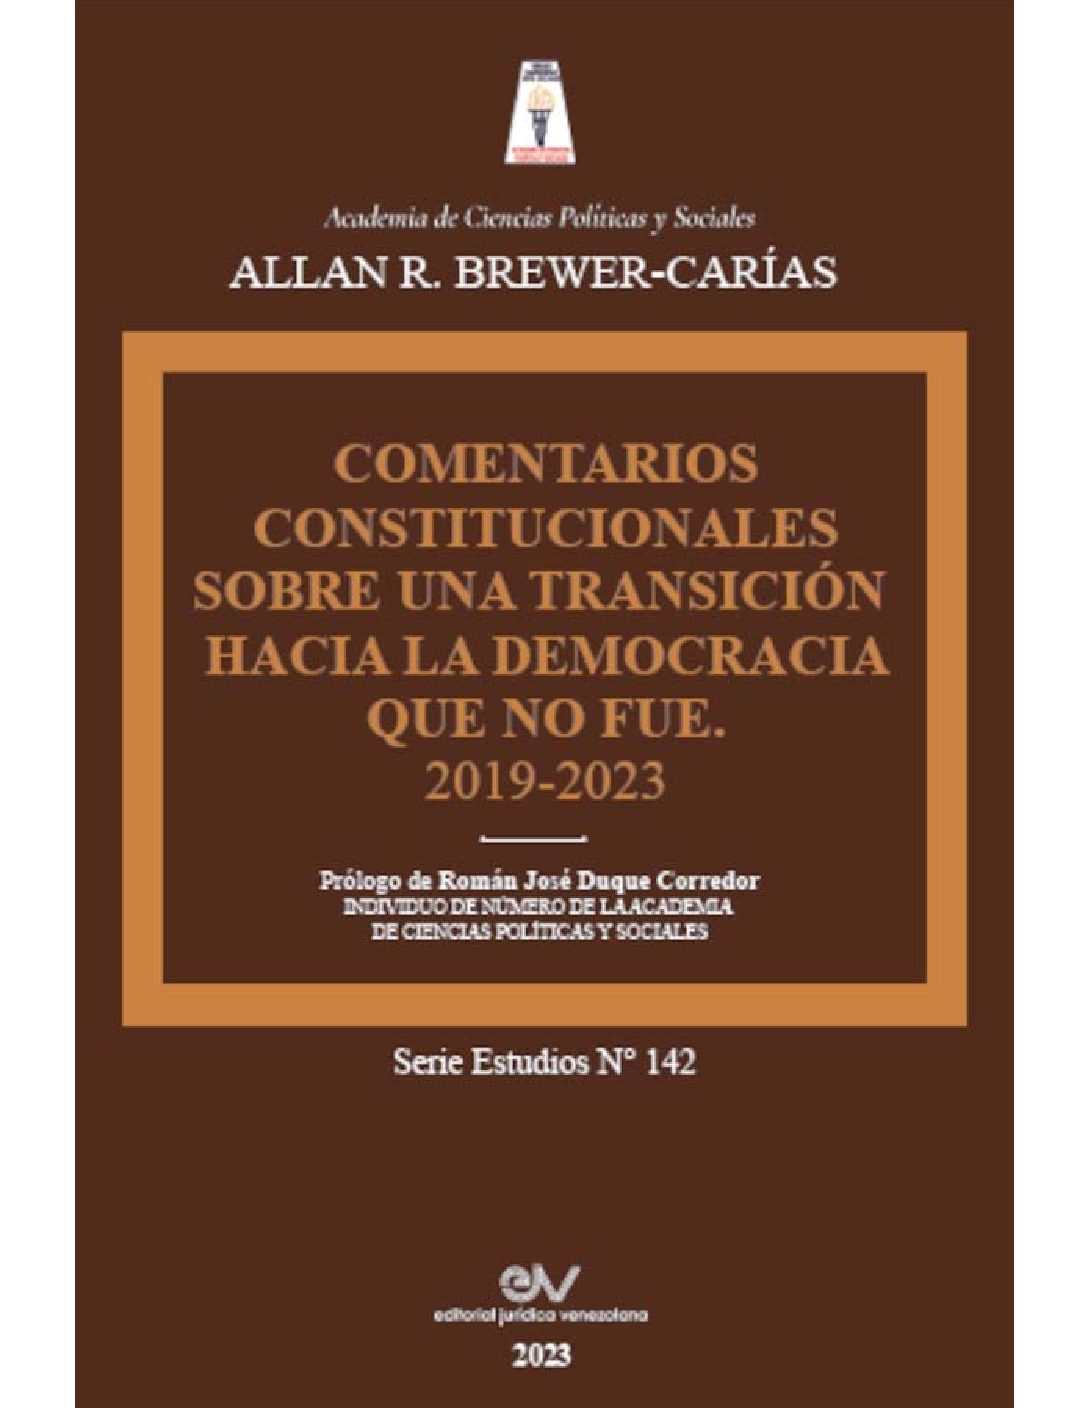 Comentarios constitucionales sobre una transición hacia la democracia que no fue 2019-2023. Autor: Allan R. Brewer-Carías